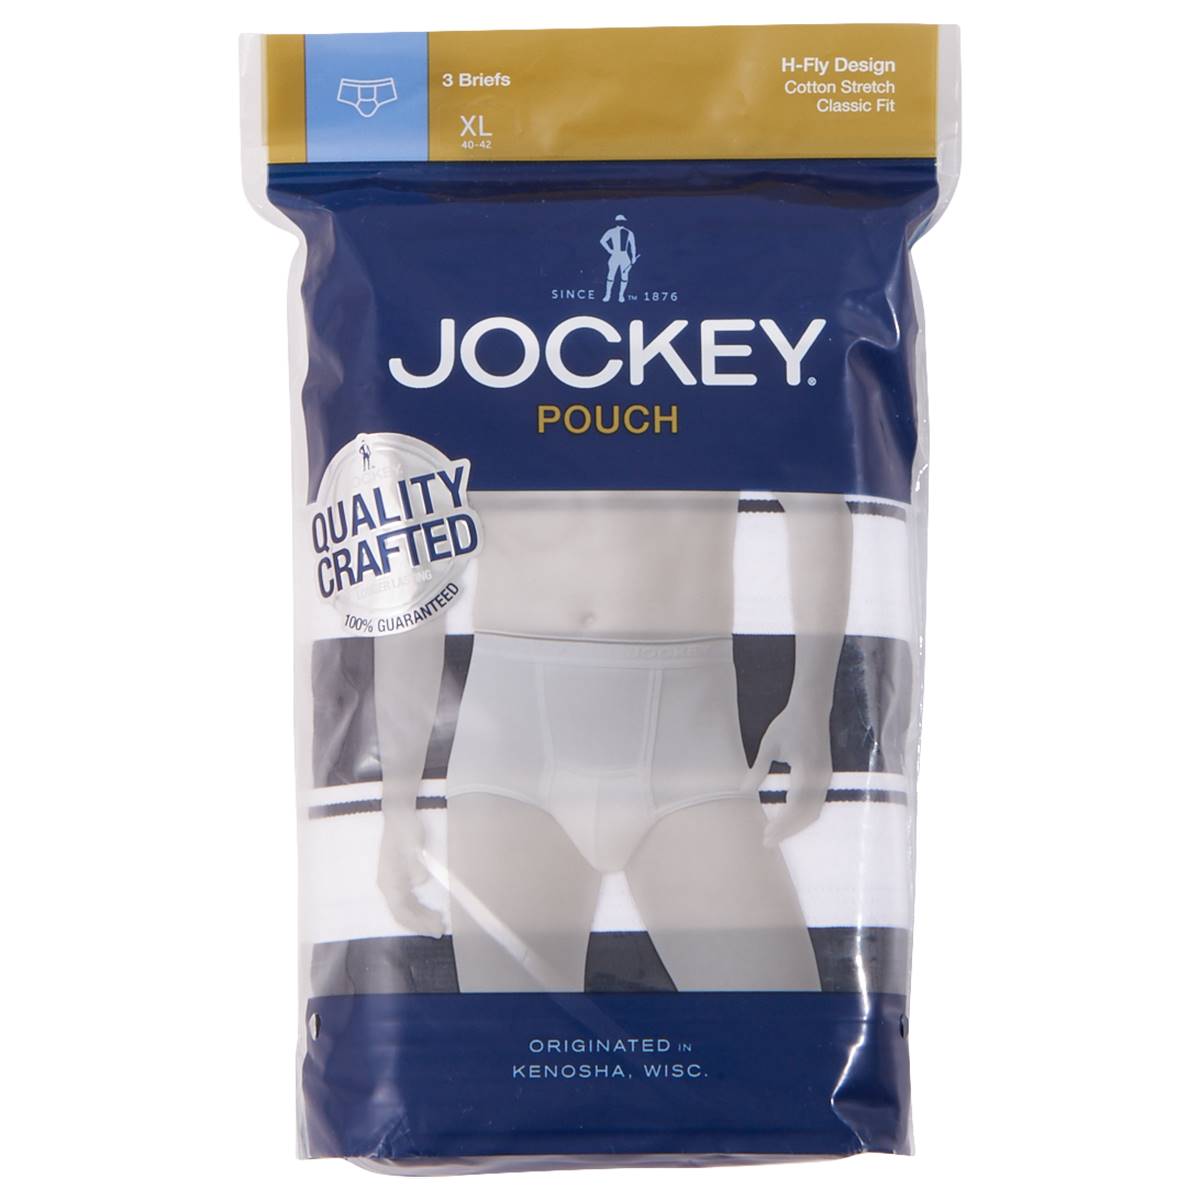 Jockey pouch brief